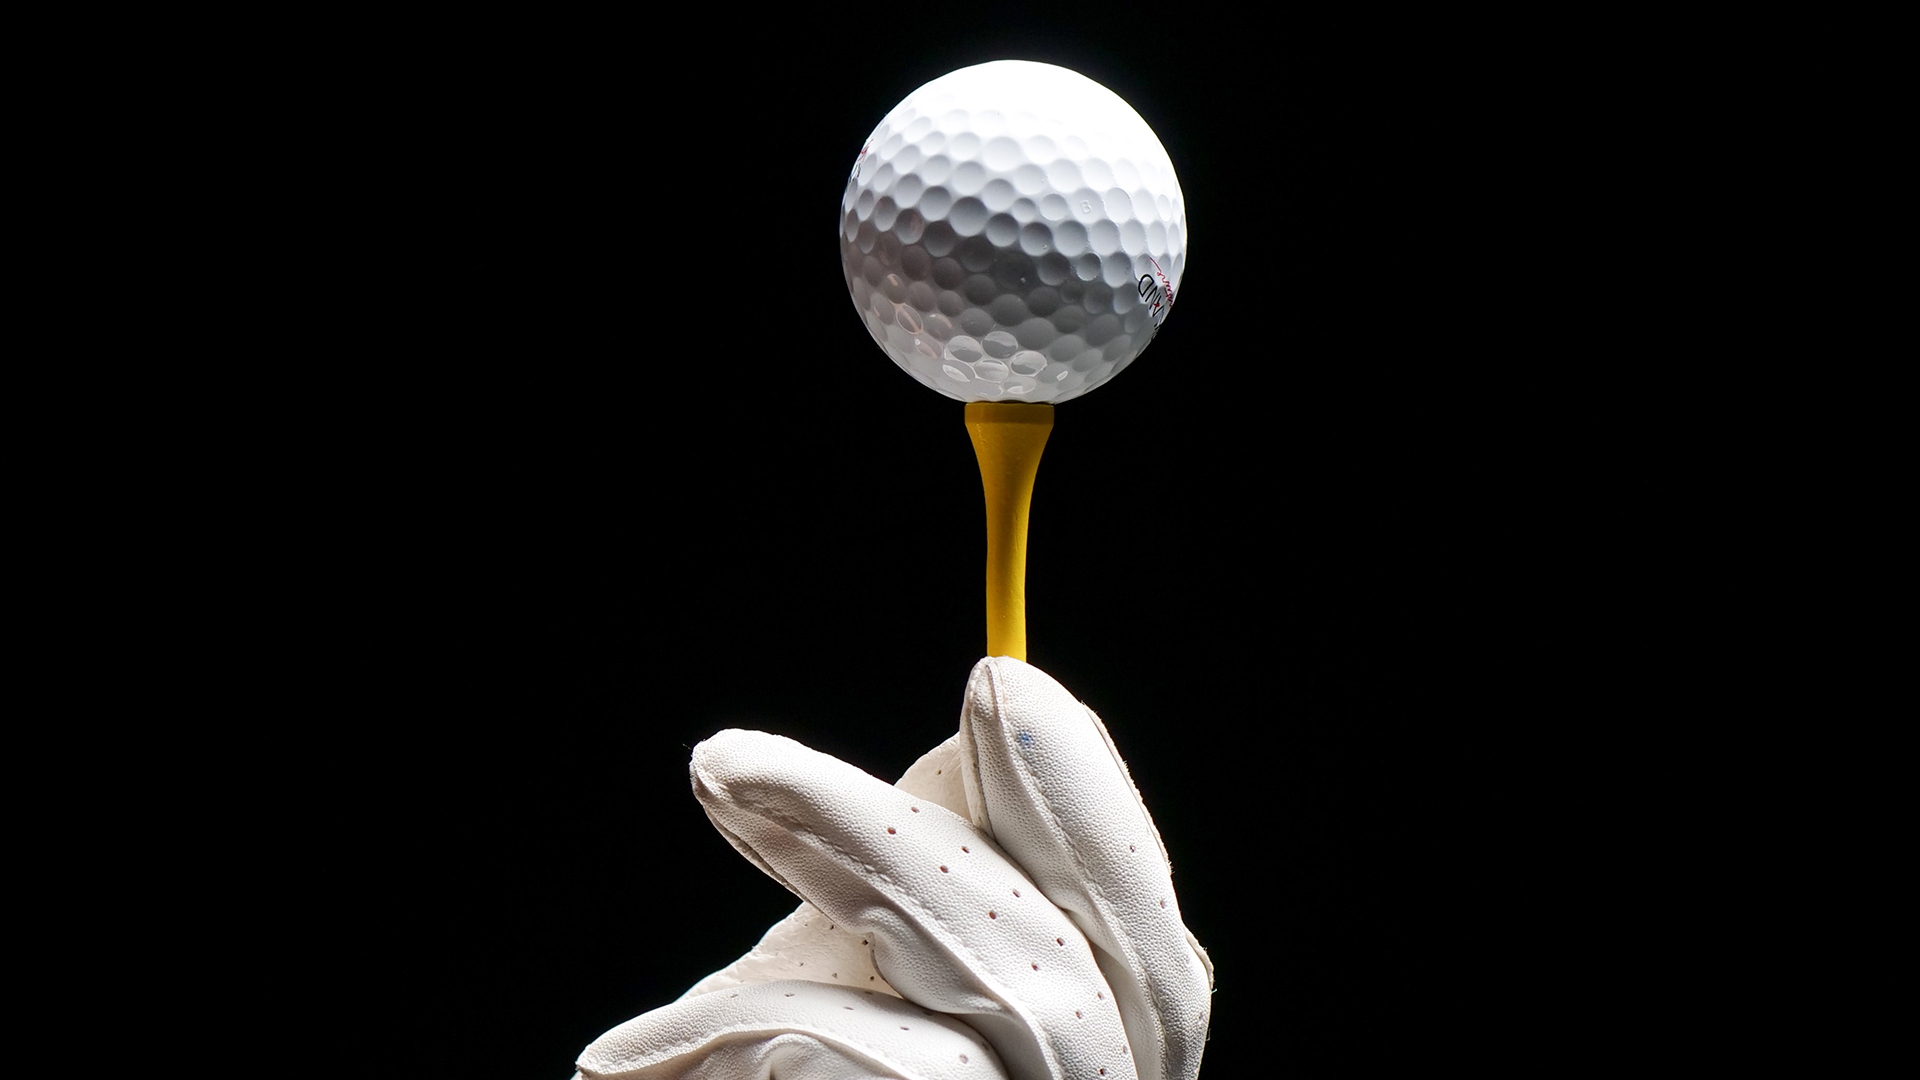 Una foto estilo artístico de una bola de golf sujeta por unos guantes de piel blanca